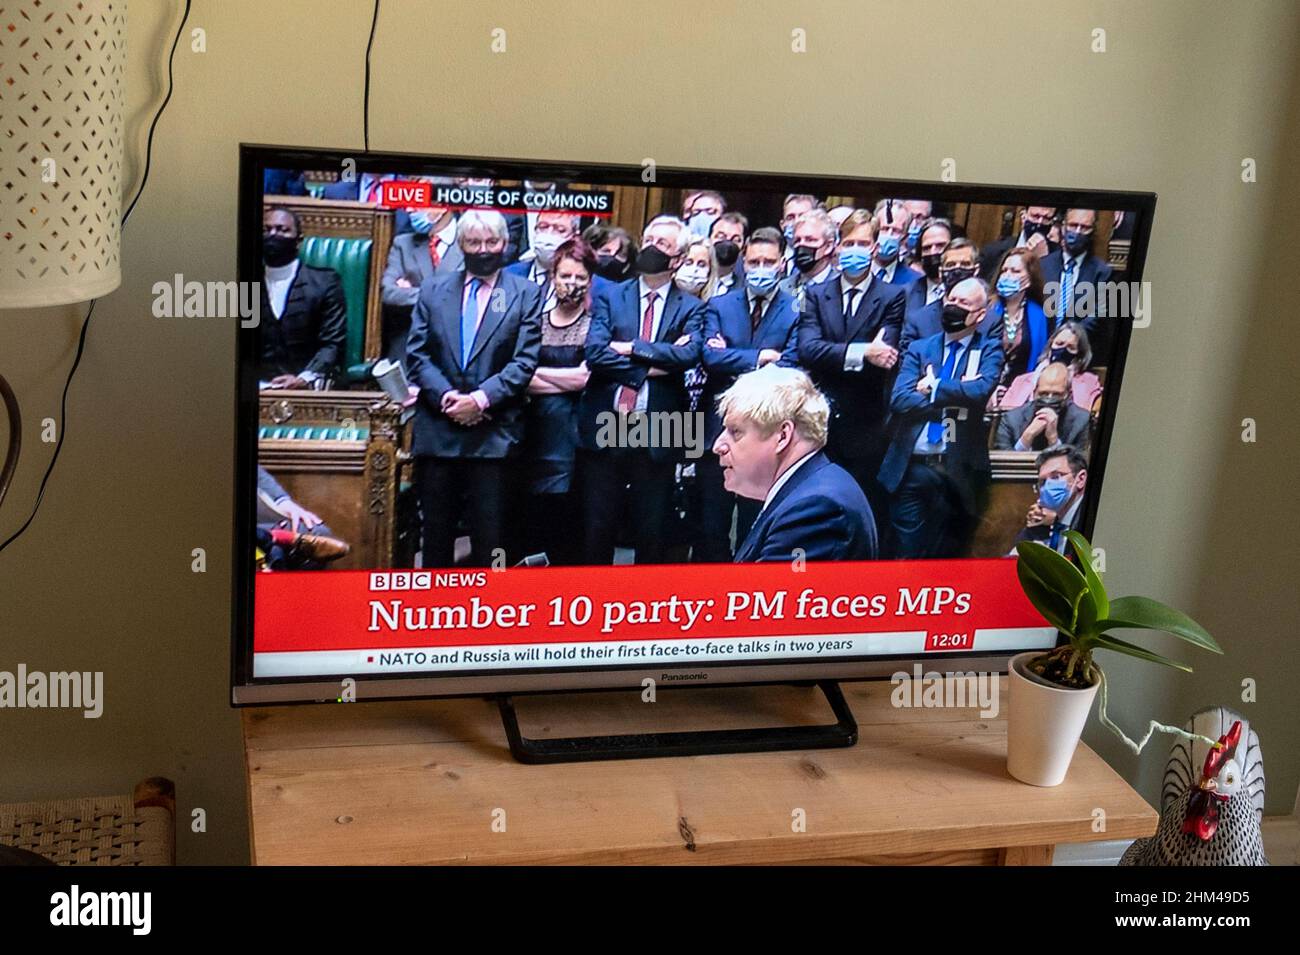 Il primo ministro Boris Johnson sulle notizie della BBC si scusa con i deputati dei comuni per aver infranto le regole di Covid con i partiti a 10 Downing Street. Foto Stock